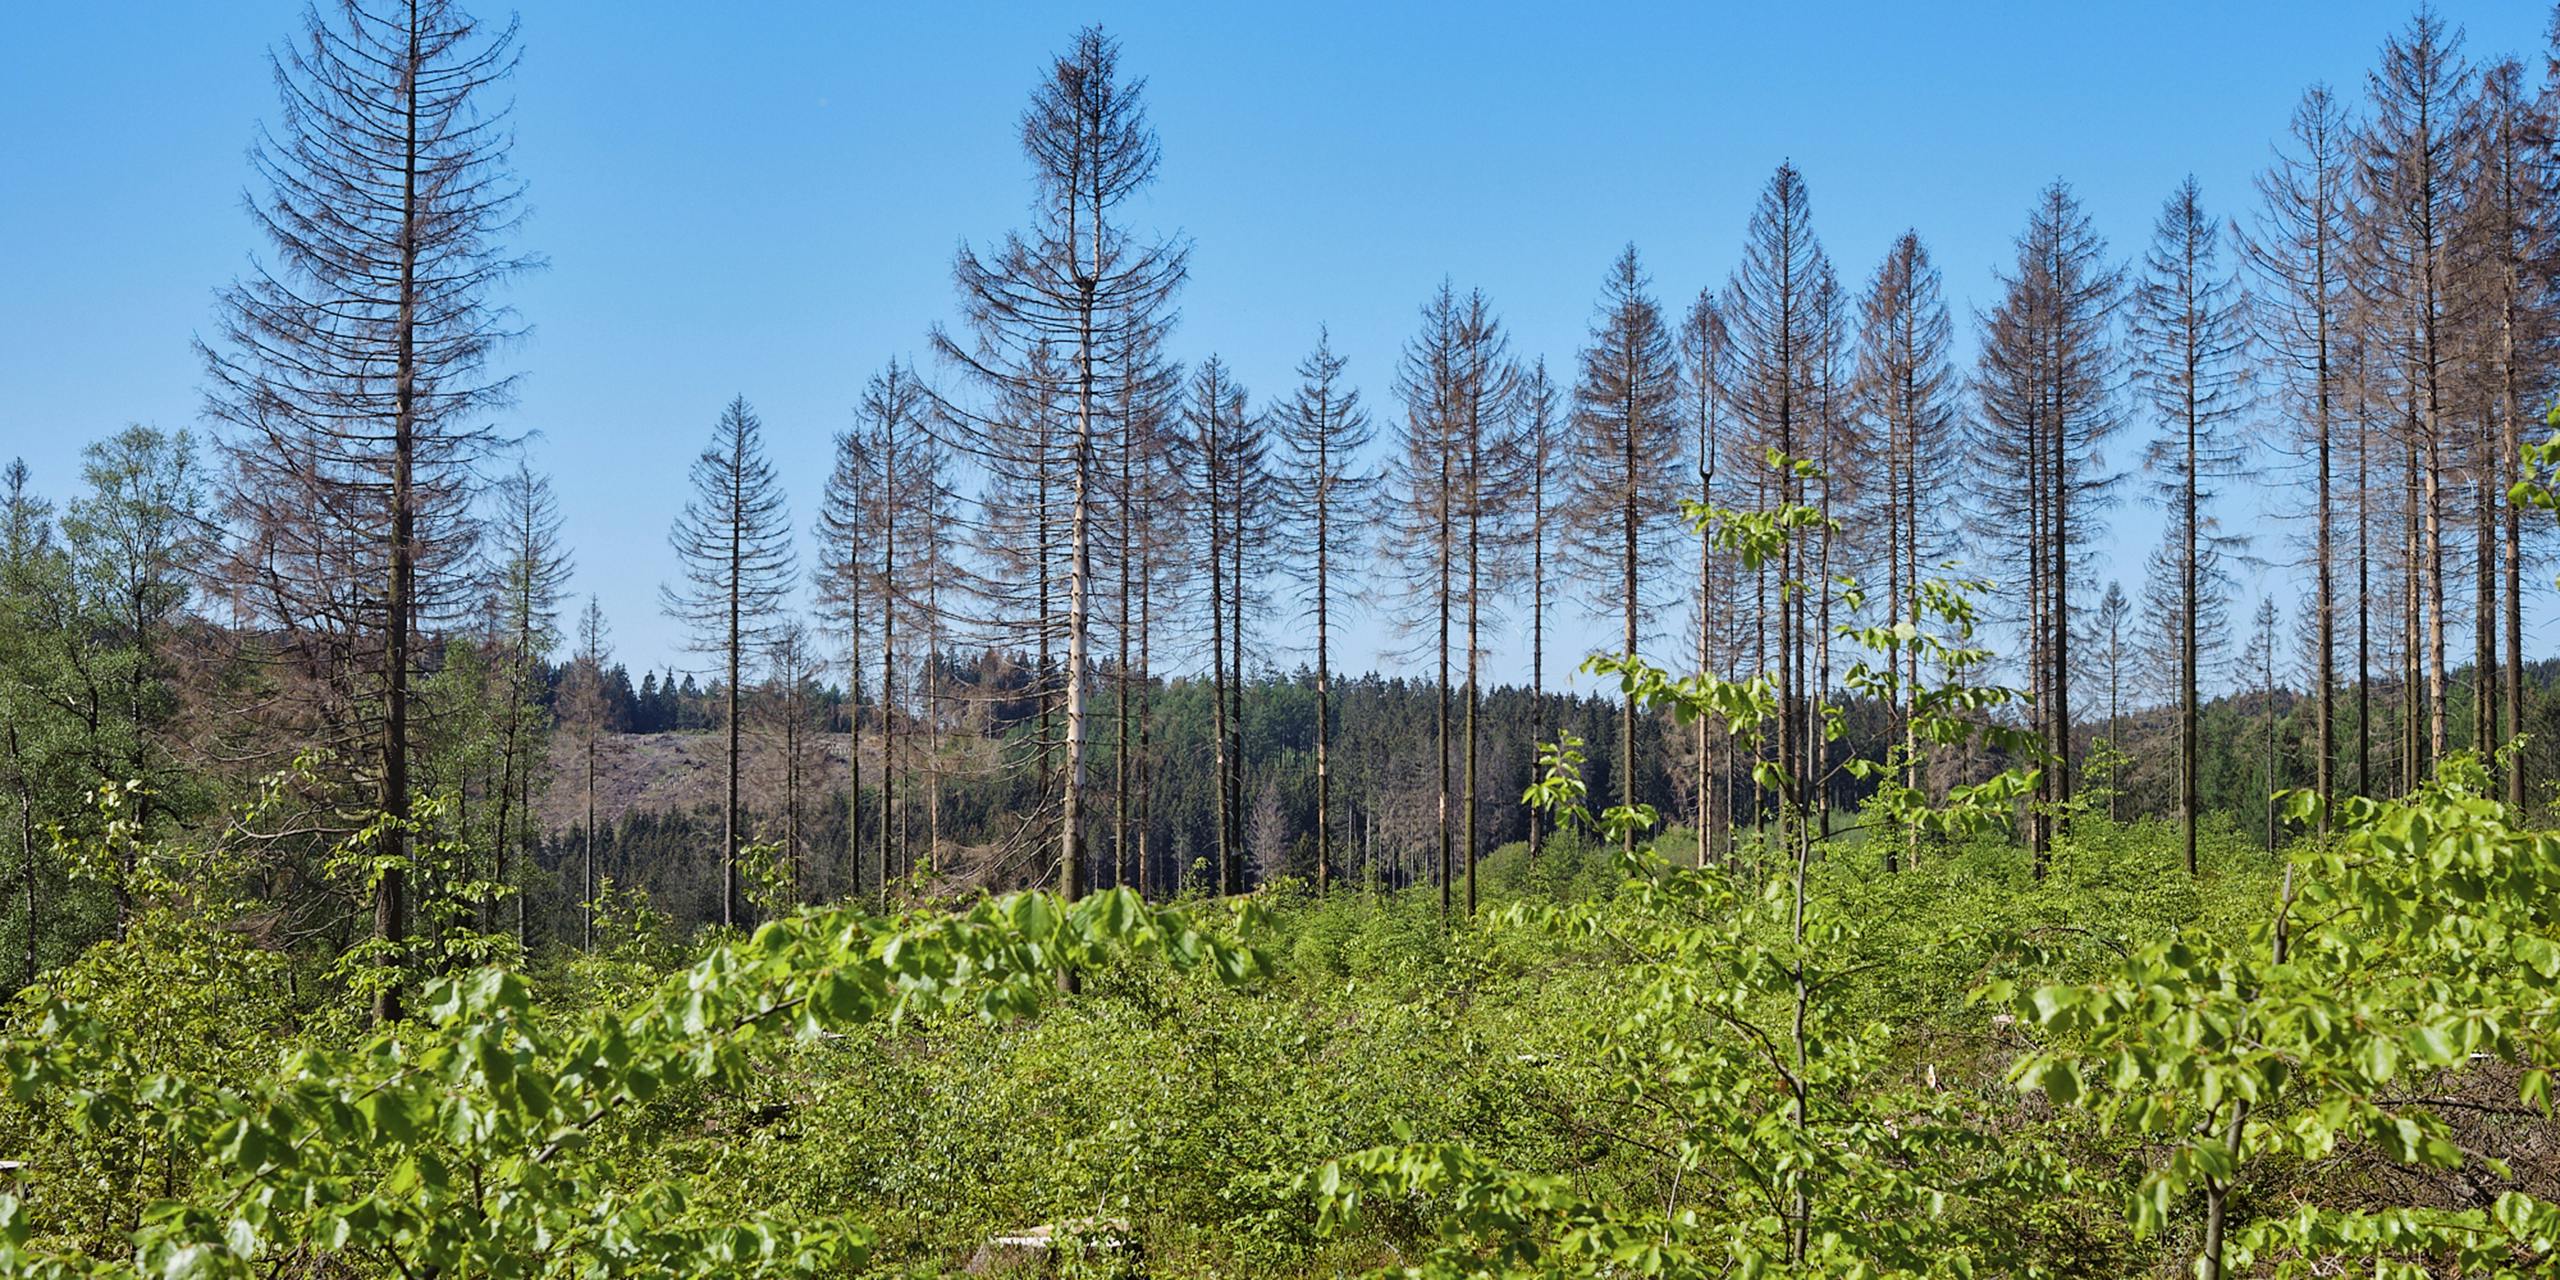 Trockenheit, Schädlinge, Unwetter und der Klimawandel – die vergangenen Jahre haben unserem Wald stark zugesetzt.